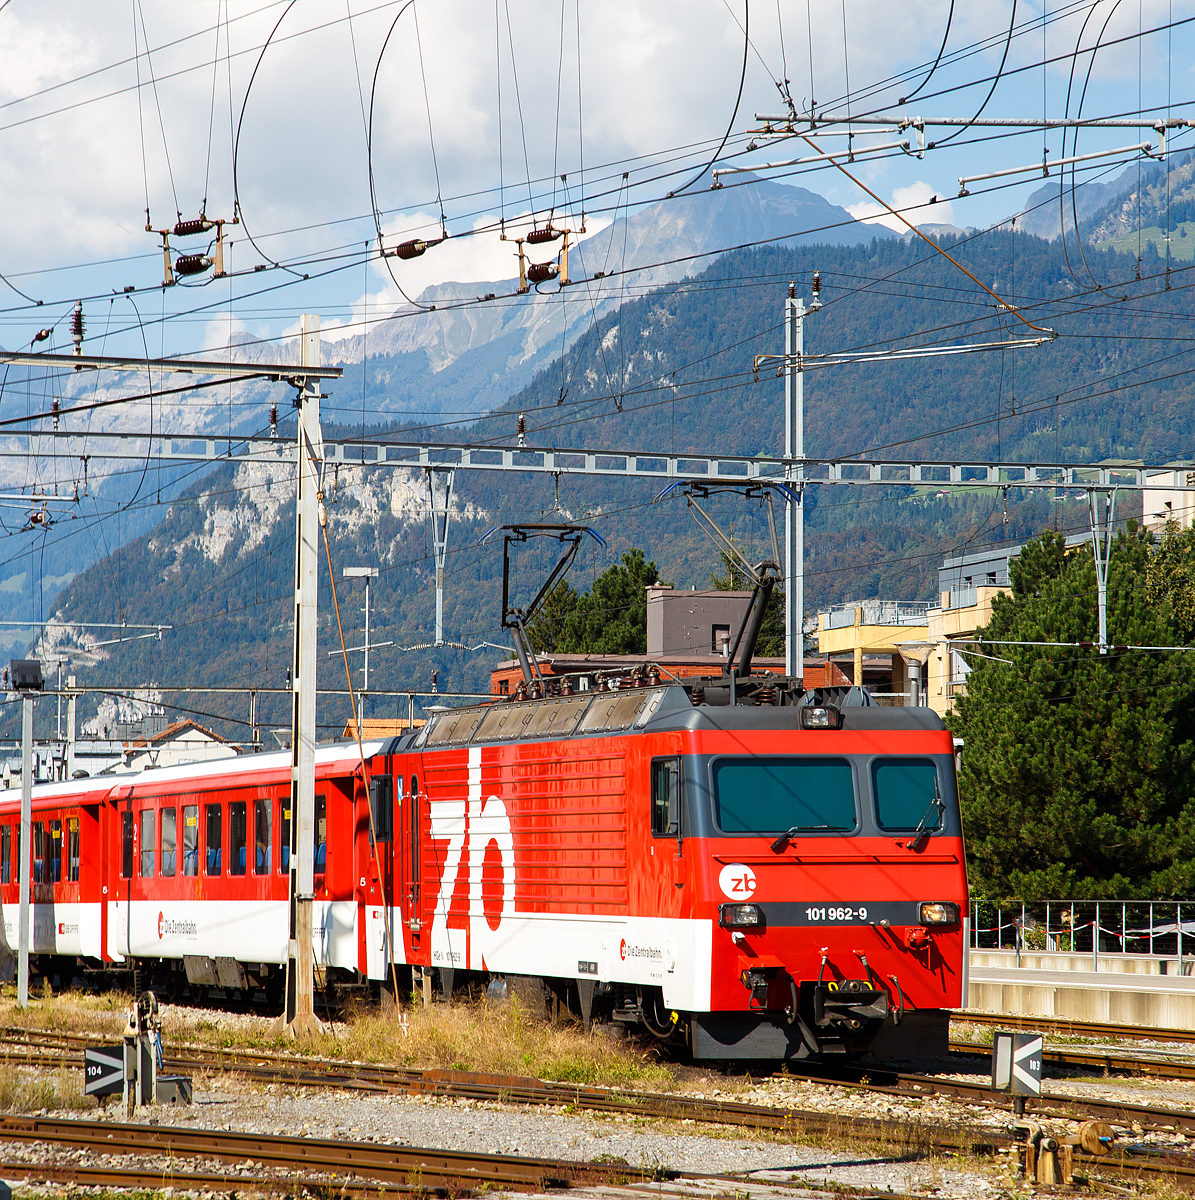 
Es gibt sie noch...
Die HGe 4/4 II - 101 962-9  „Hergiswil“  der zb (Zentralbahn)  ist am 25.09.2016 mit einem Personenzug beim Bahnhof Meiringen abgestellt. 

Die schmalspurige (1.000 mm) gemischte Zahnrad- und Adhäsions-Lokomotive wurde von SLM (Schweizerische Lokomotiv- und Maschinenfabrik) in Winterthur 1989 unter der Fabriknummer 5396 gebaut, der elektrische Teil ist von ABB.
